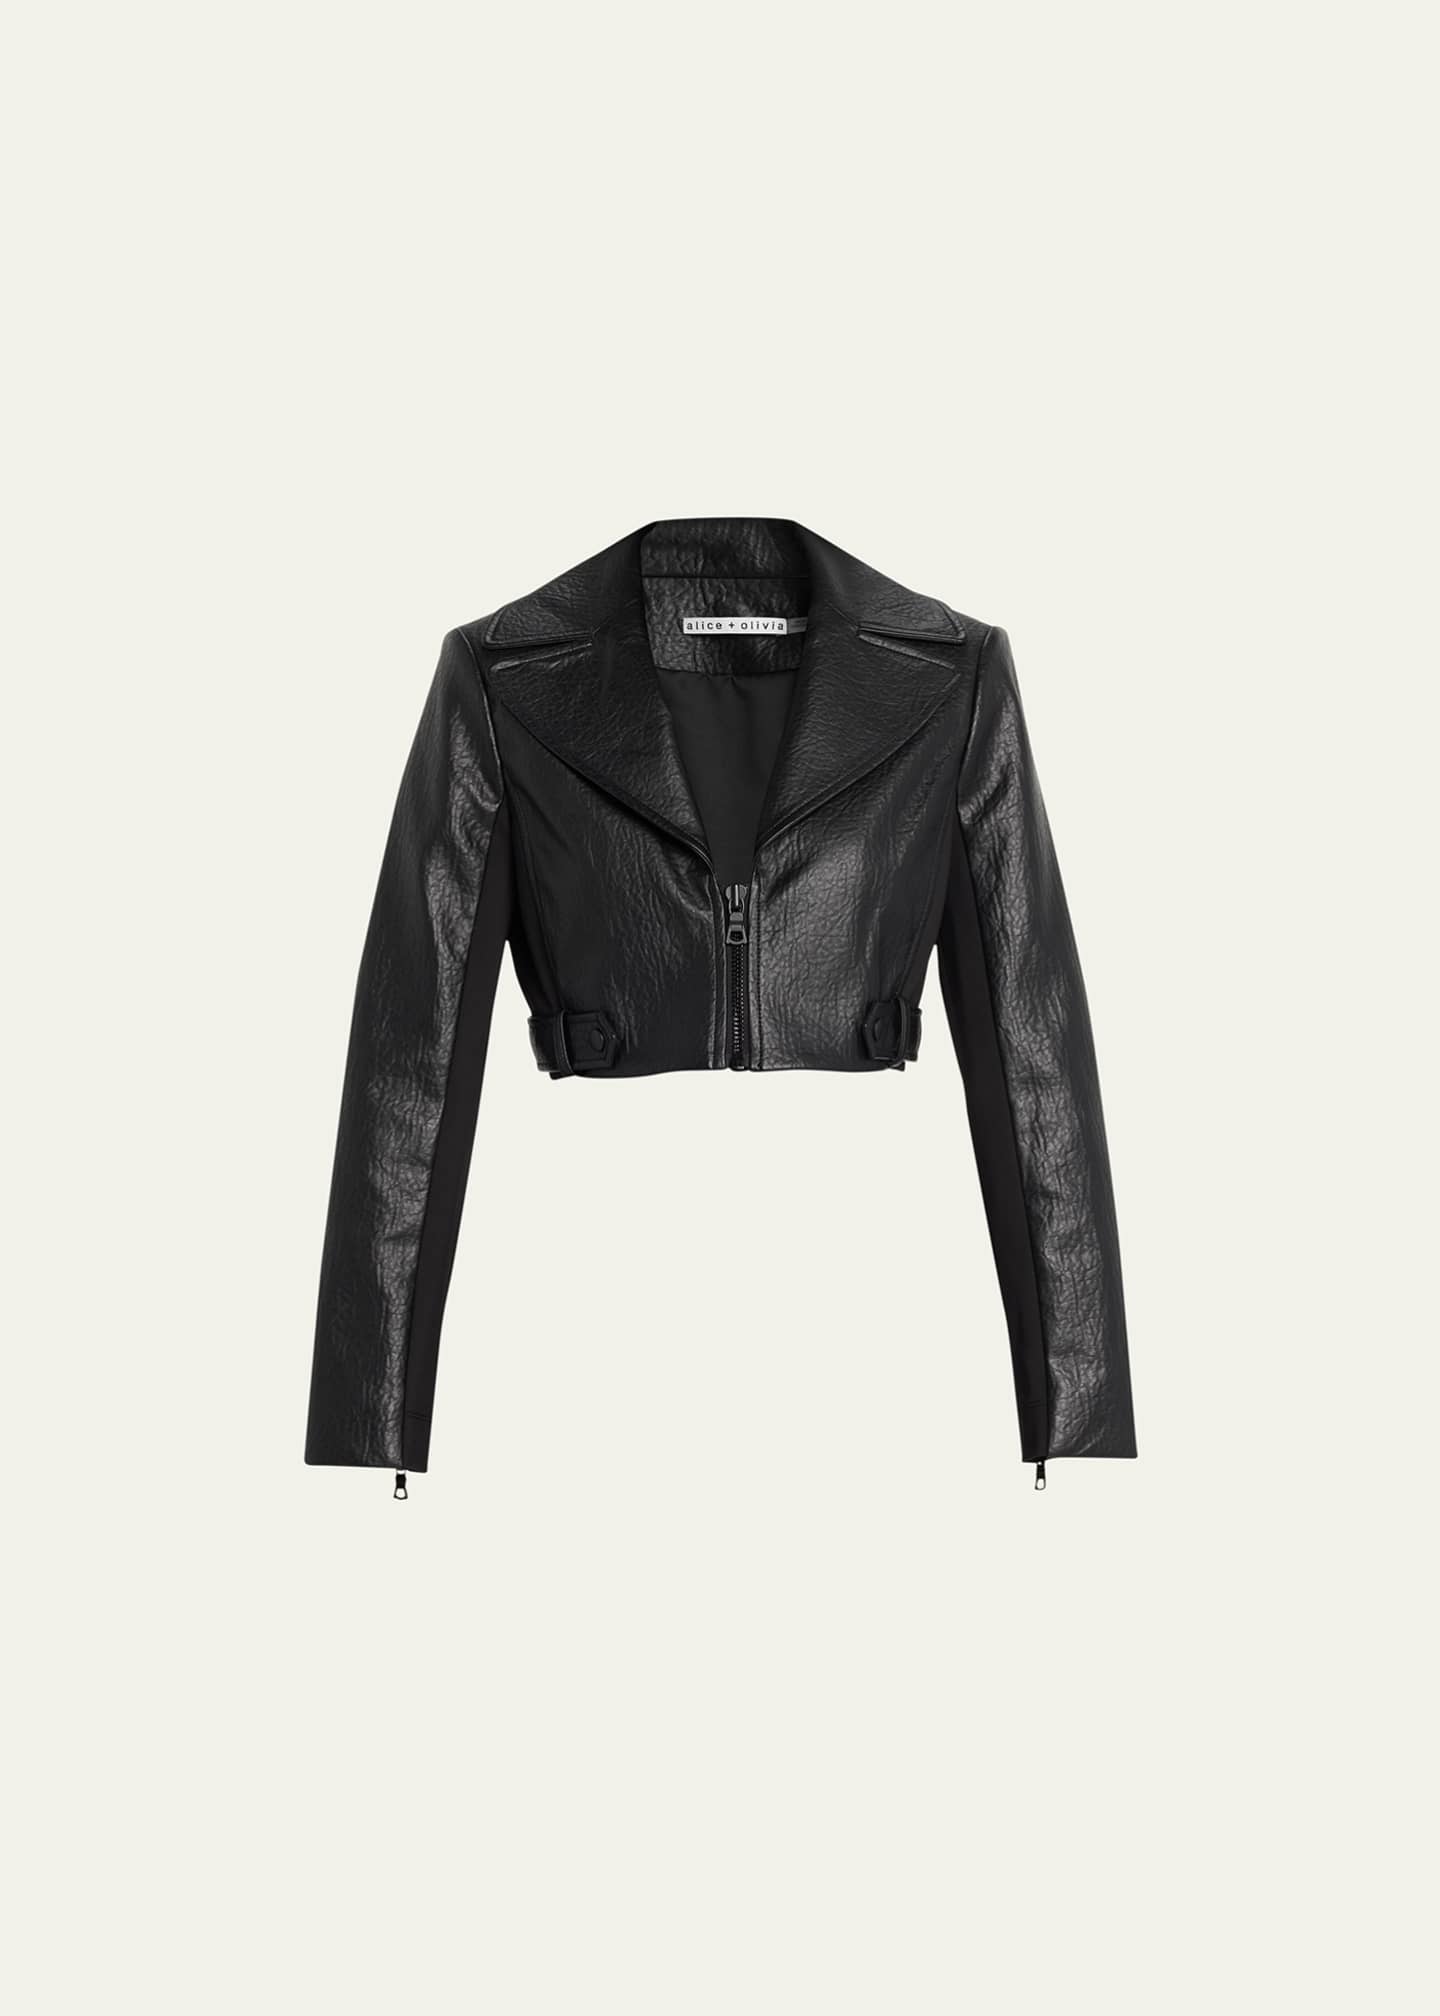 Alice + Olivia Yardley Vegan-Leather Cropped Jacket - Bergdorf Goodman